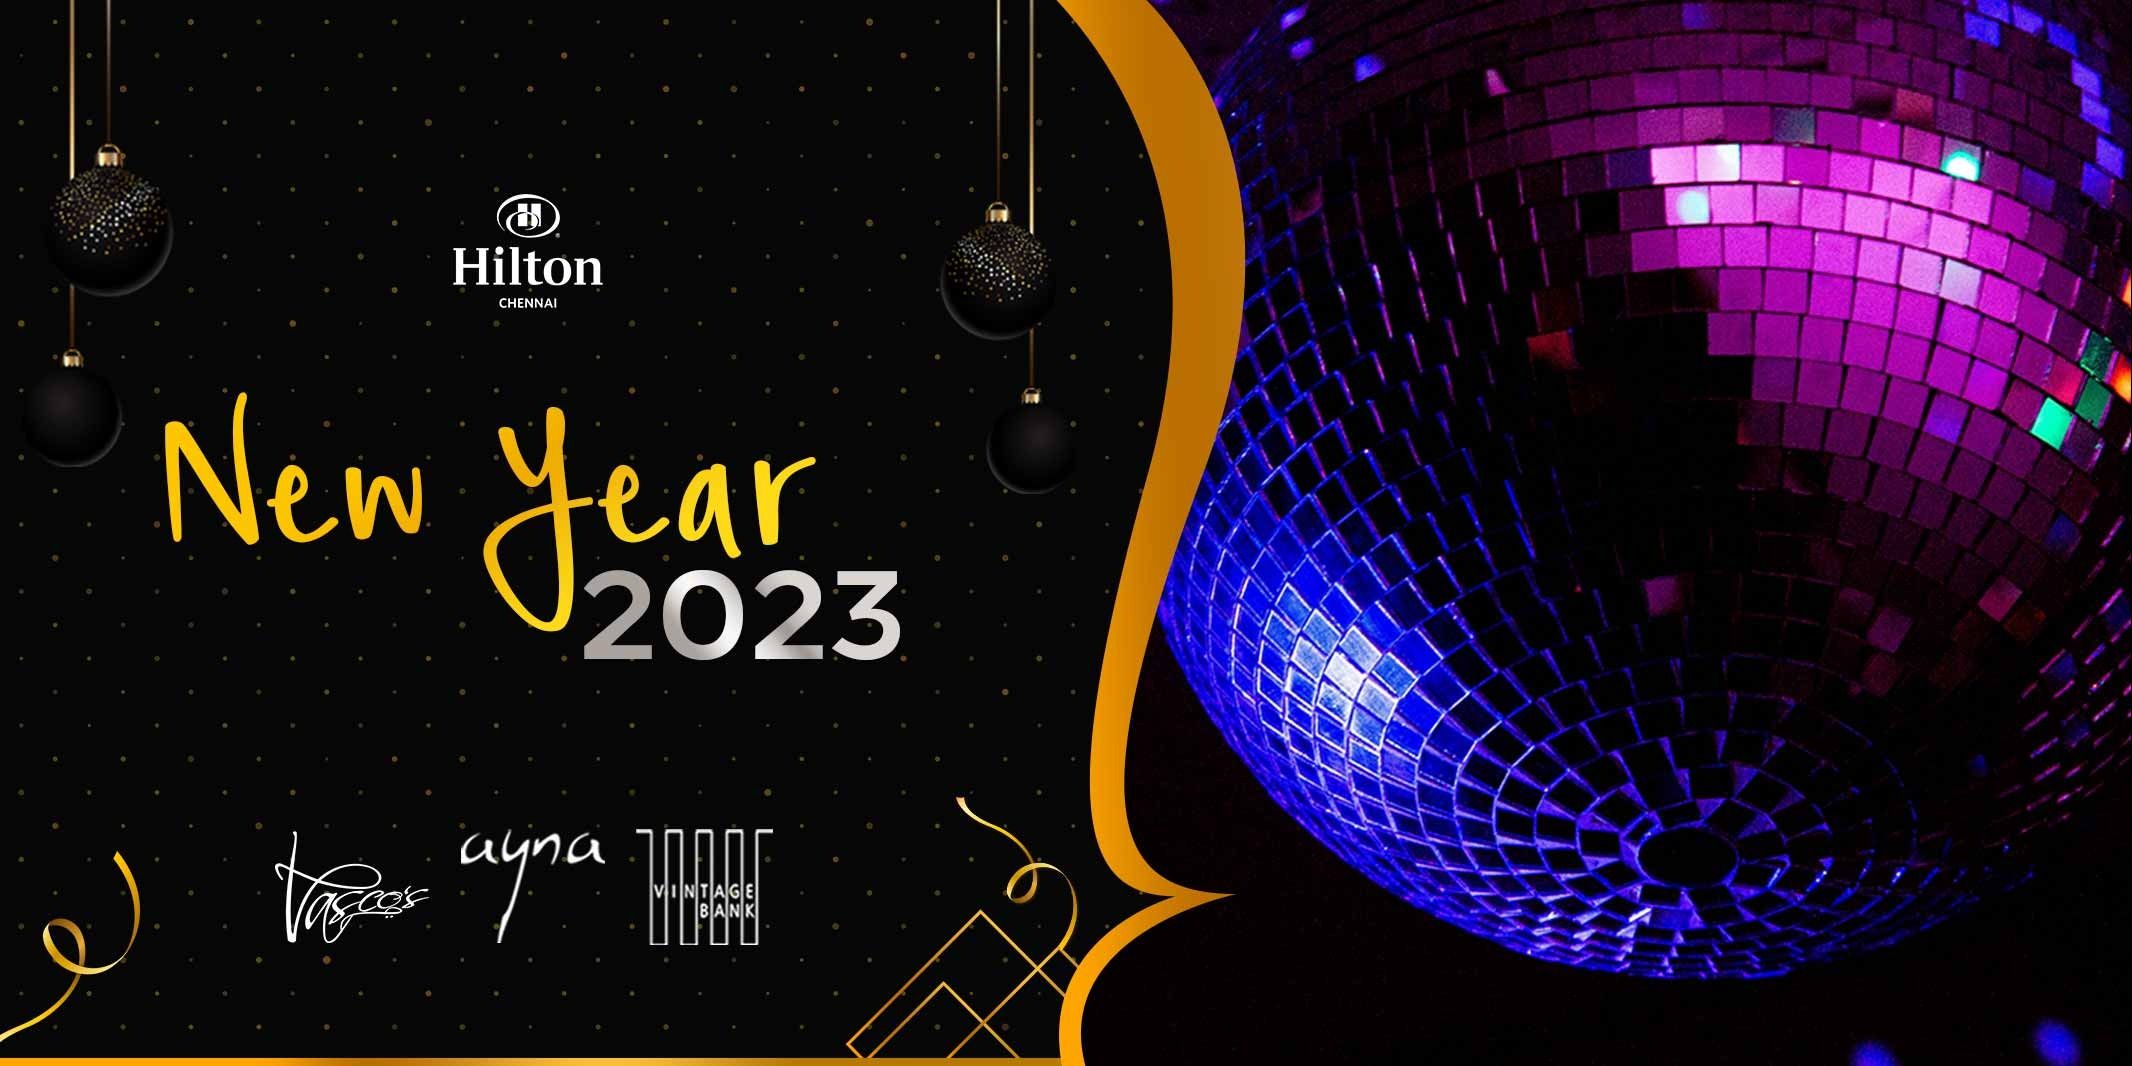 New Year Party 2023 (NYE) at Hilton Chennai